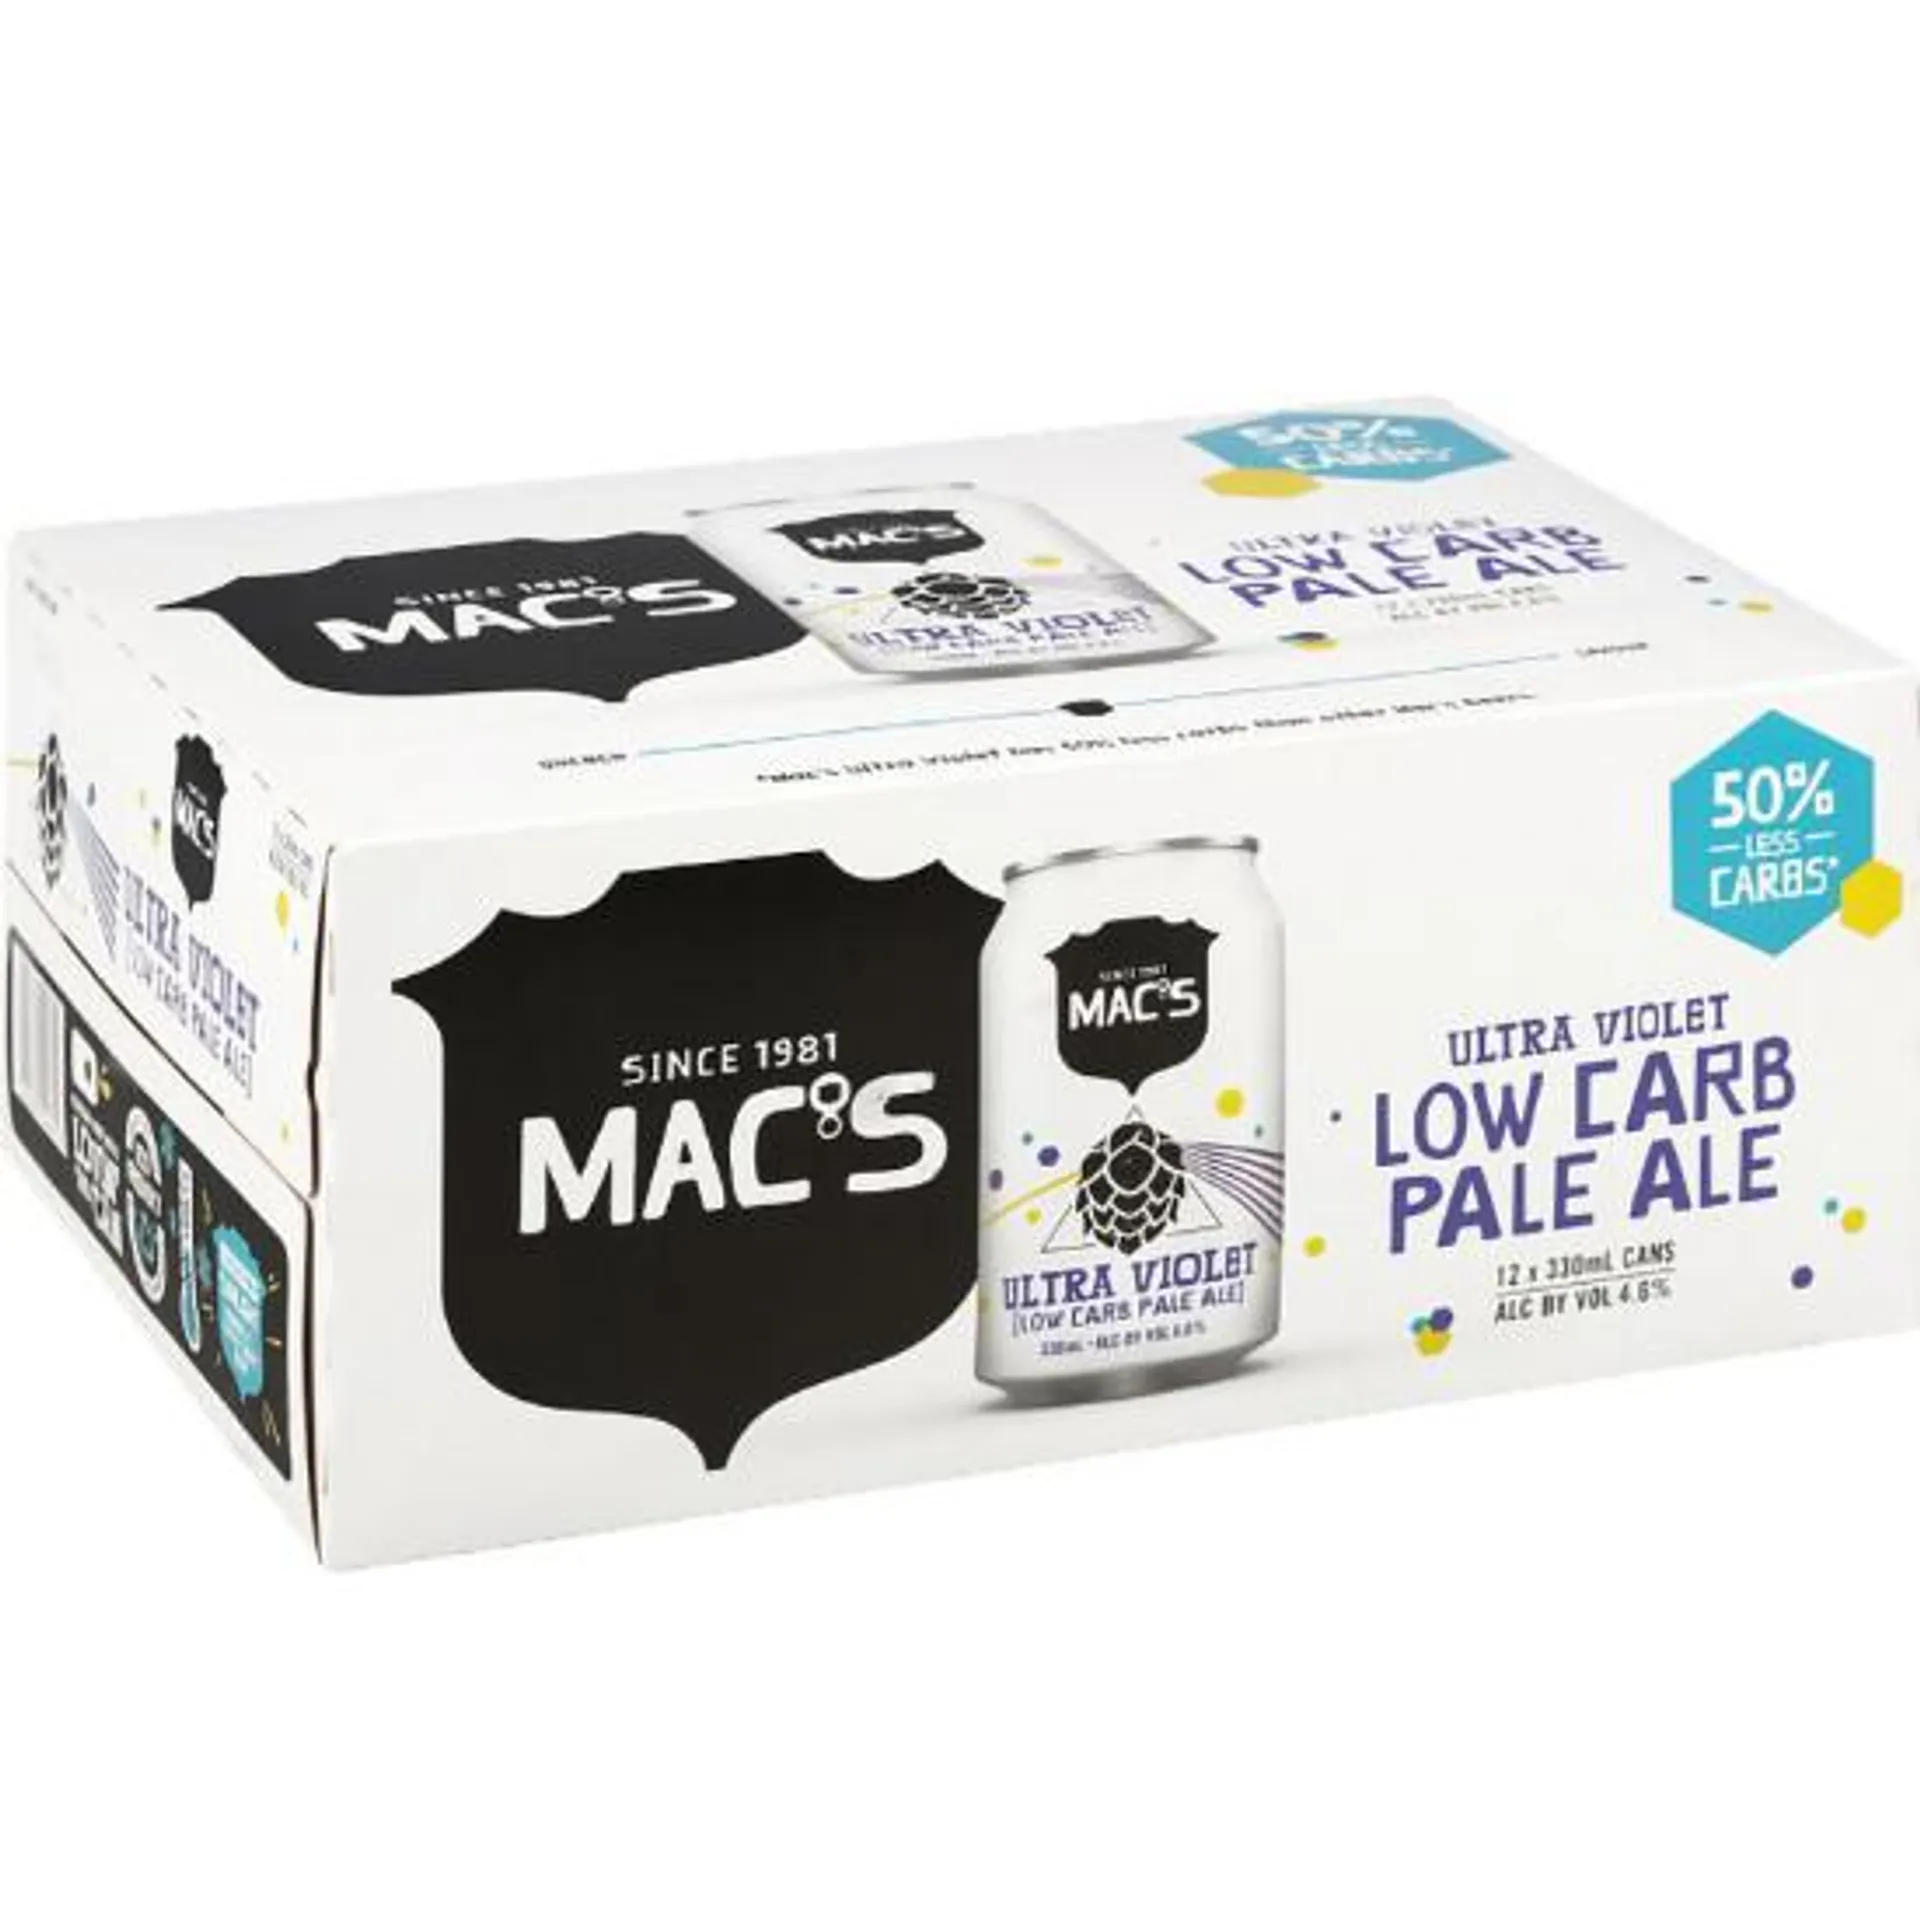 Mac's Ultra Violet Low Carb Pale Ale Cans 12x330ml